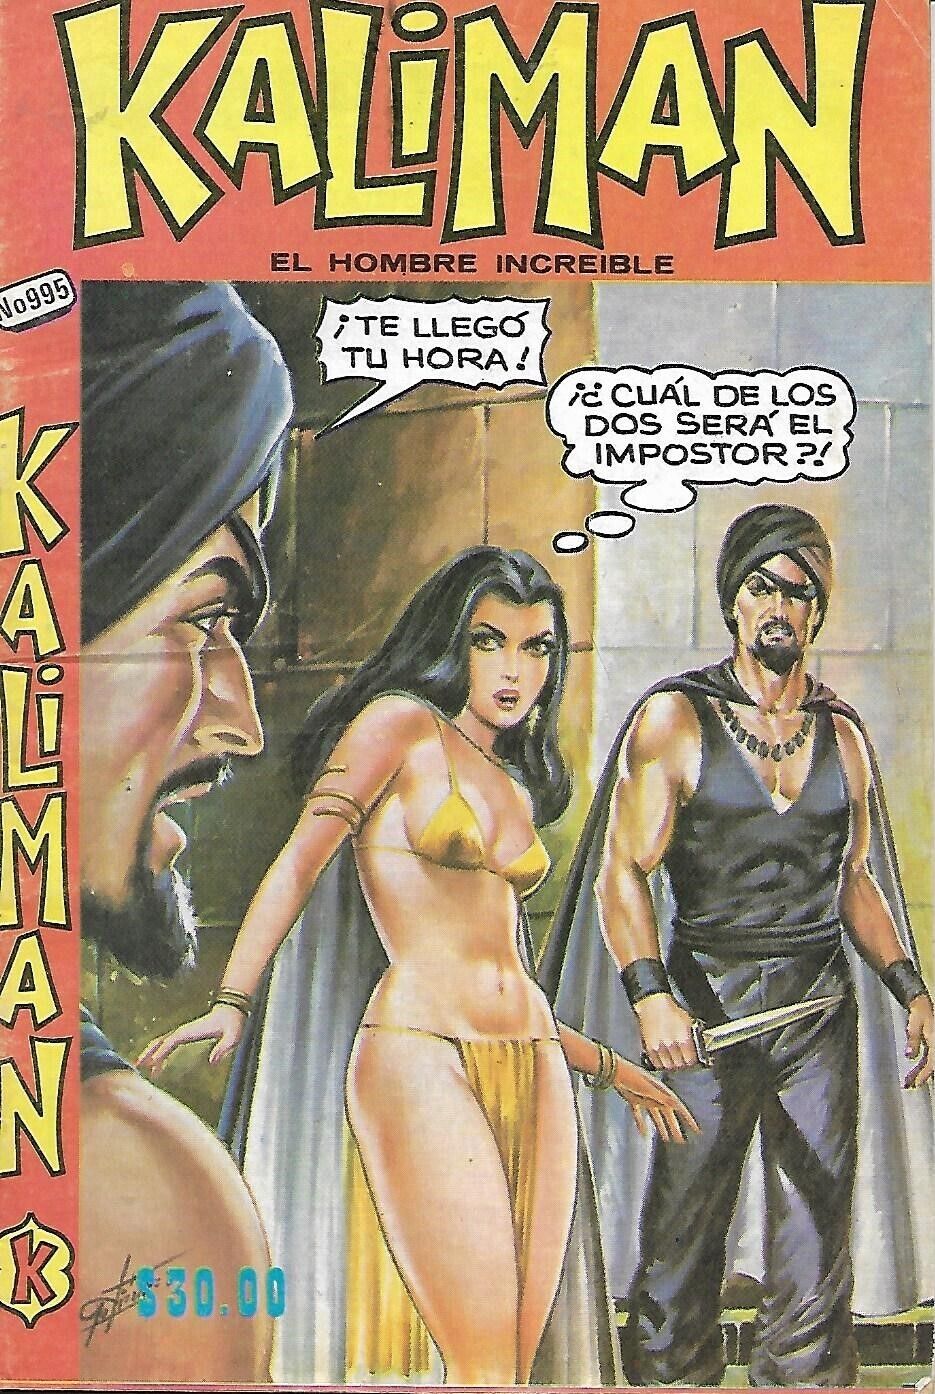 Kaliman El Hombre Increible #995 - Diciembre 21, 1984 - Mexico